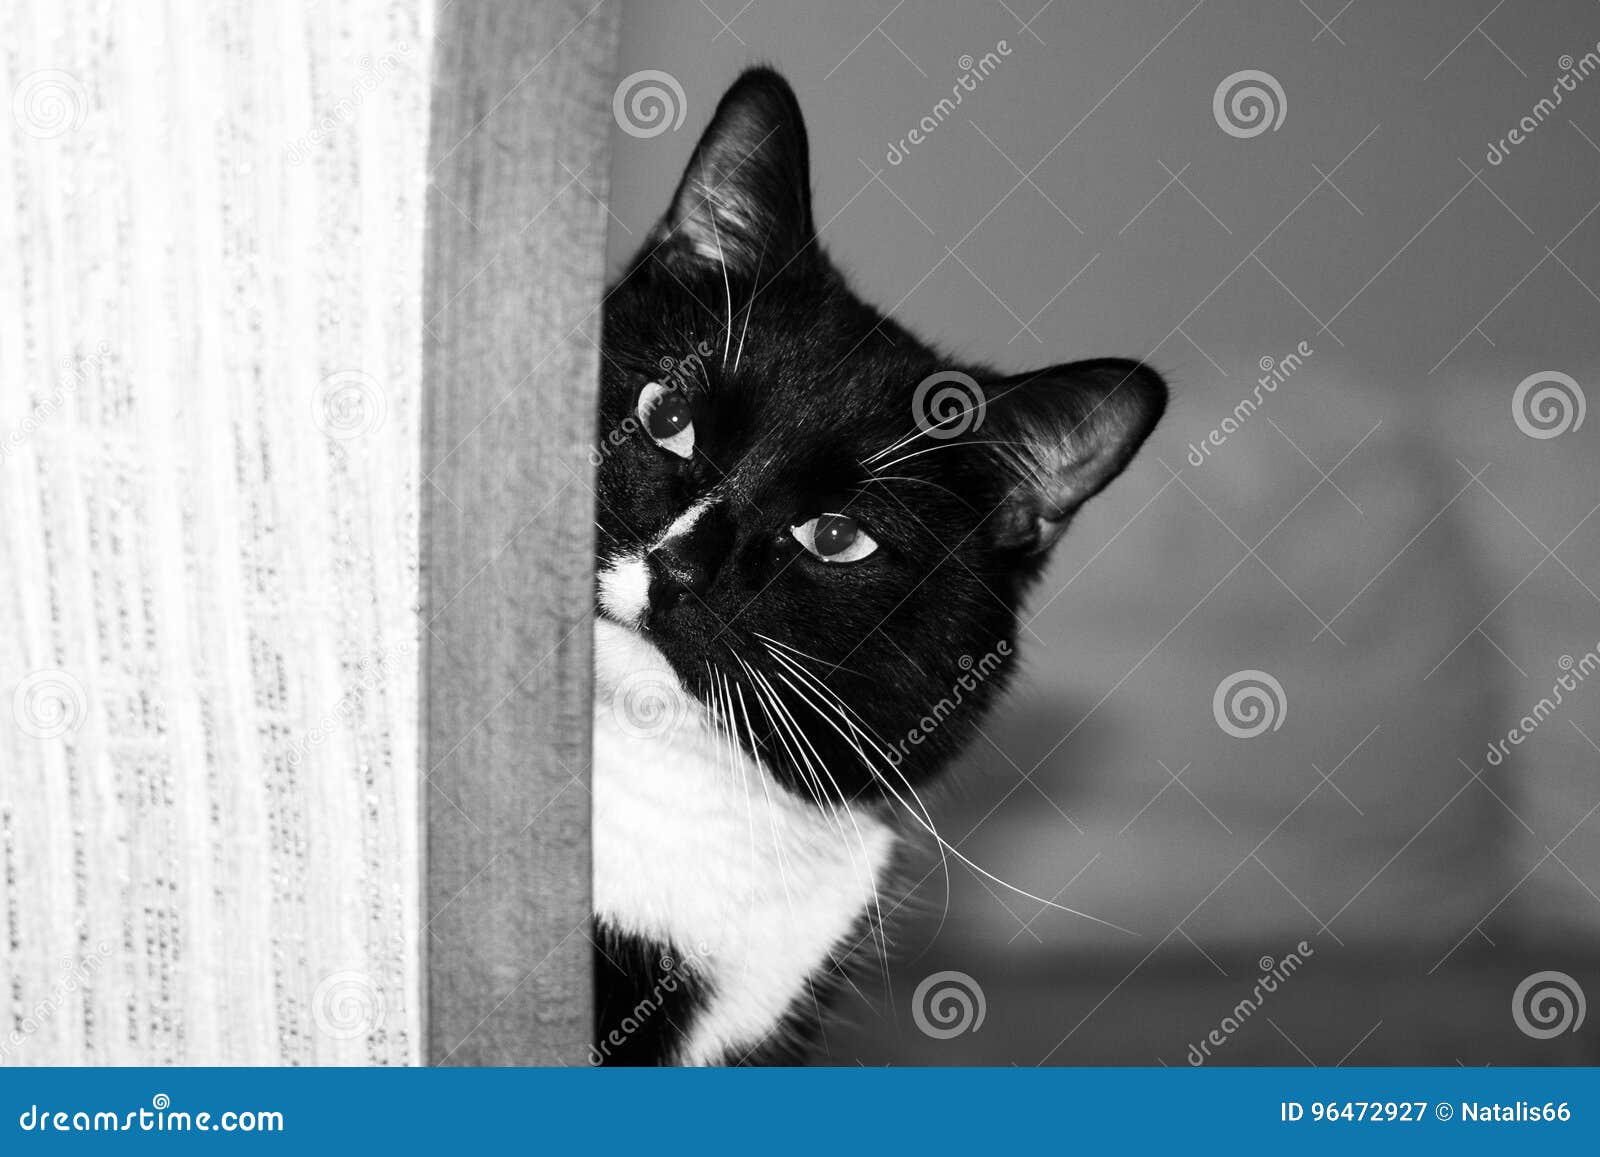 偷看通过门的猫 库存图片. 图片 包括有 好奇, 空白, 敌意, 慌张, 通过, 逗人喜爱, 偷看, 国内 - 49598281